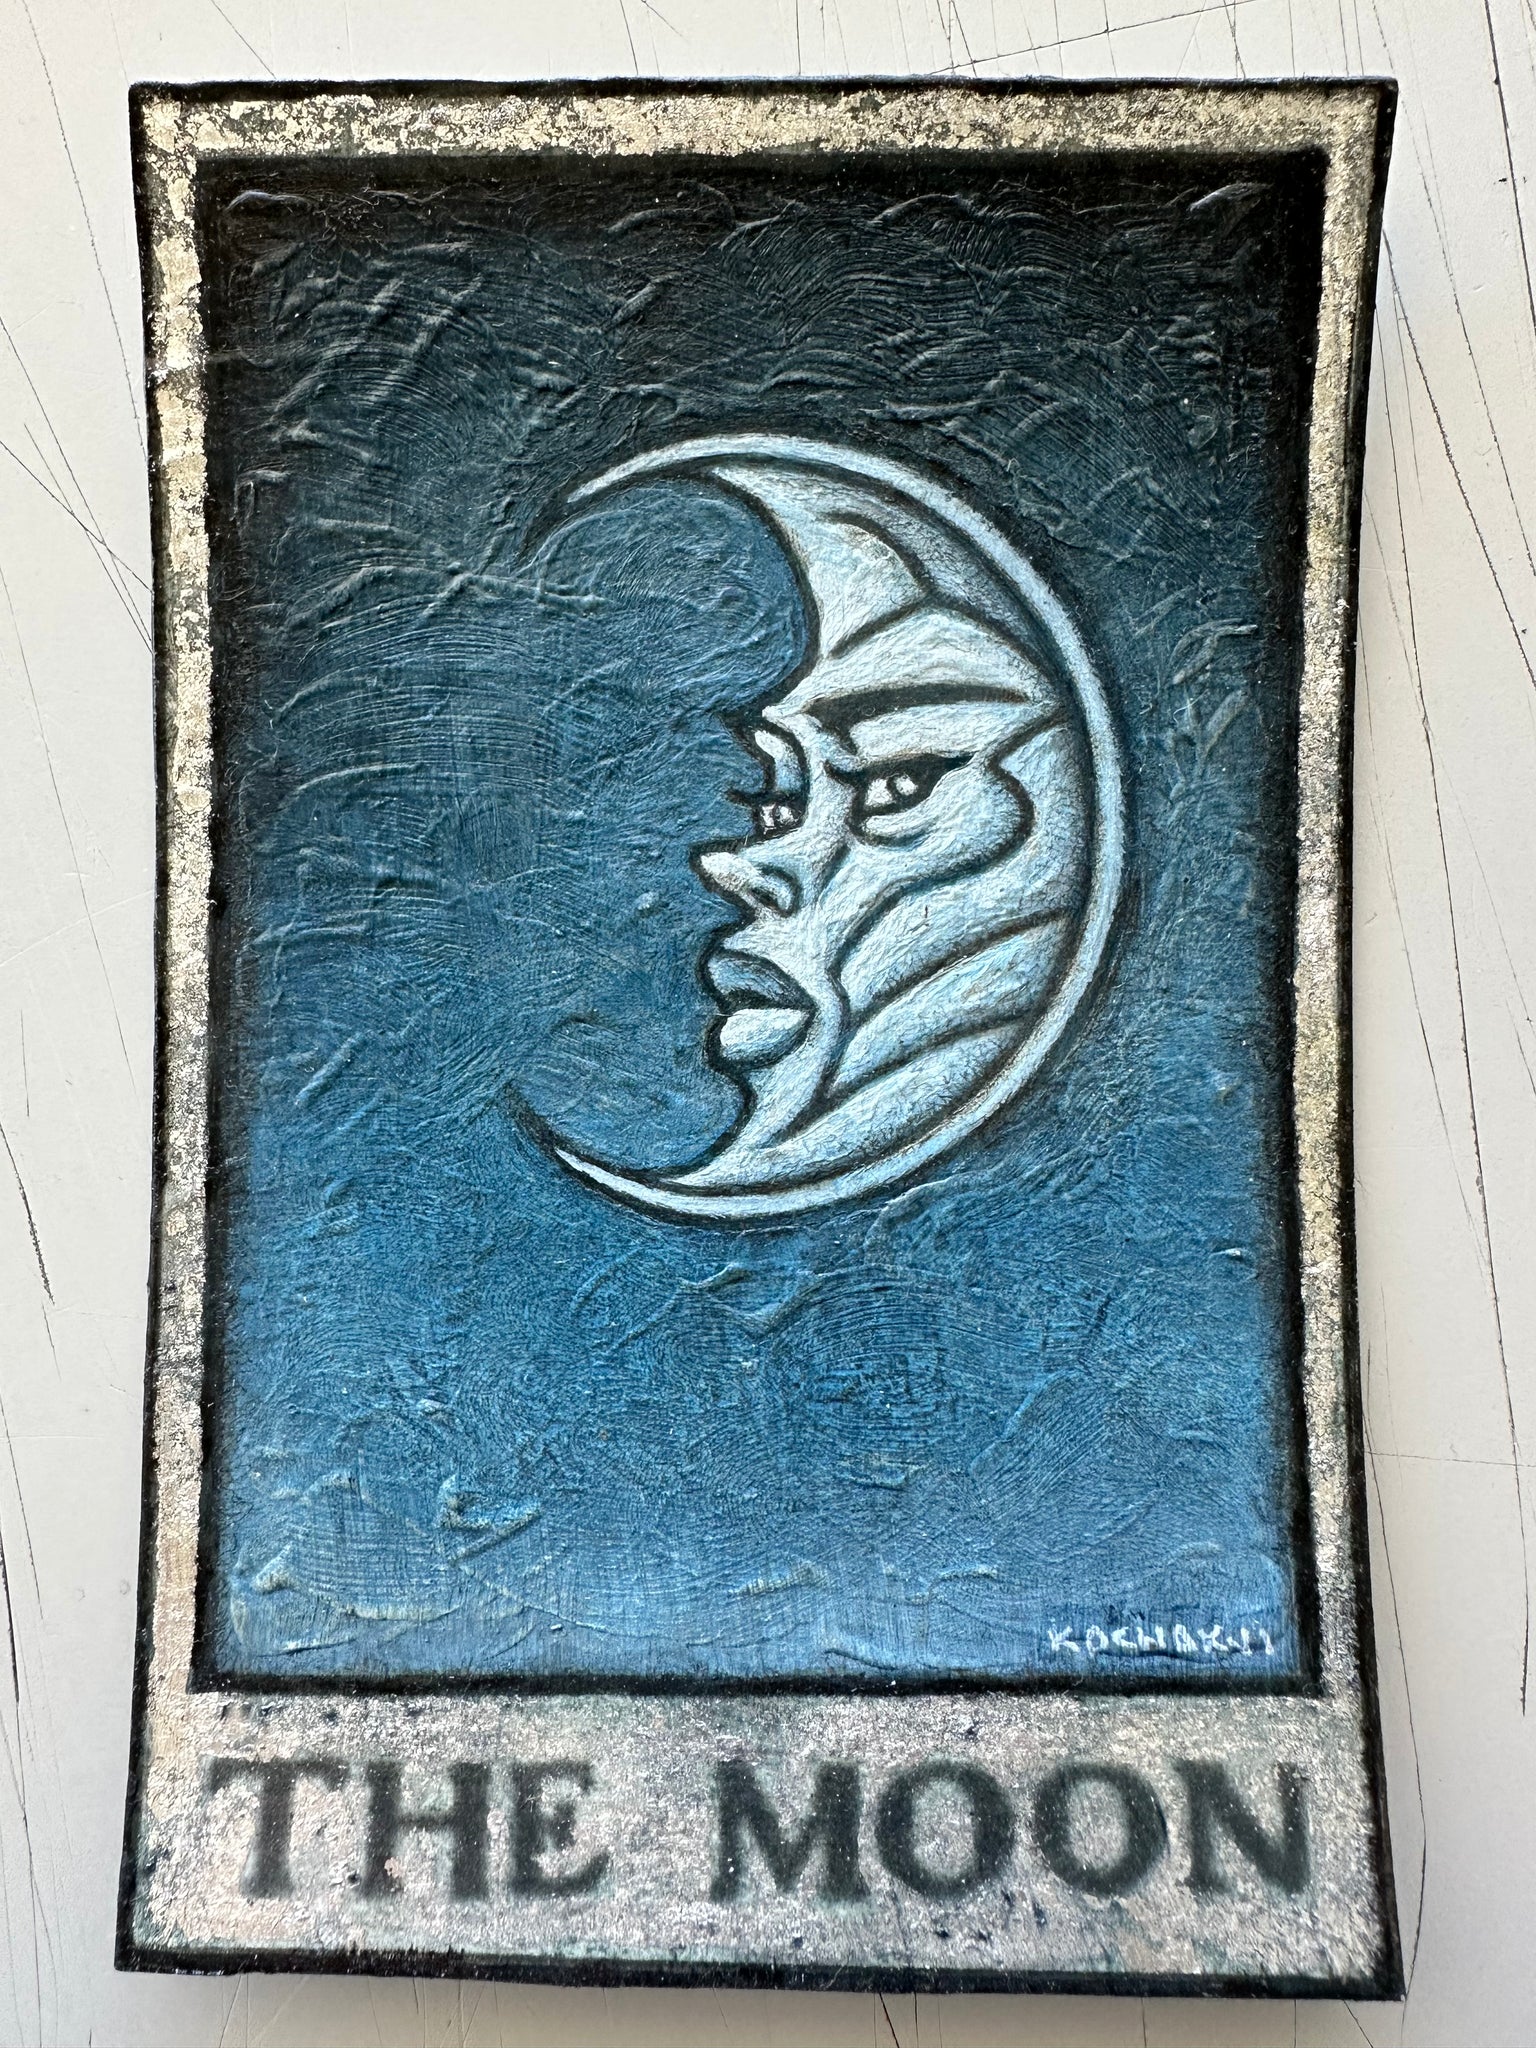 The Moon • Patrick Kochakji